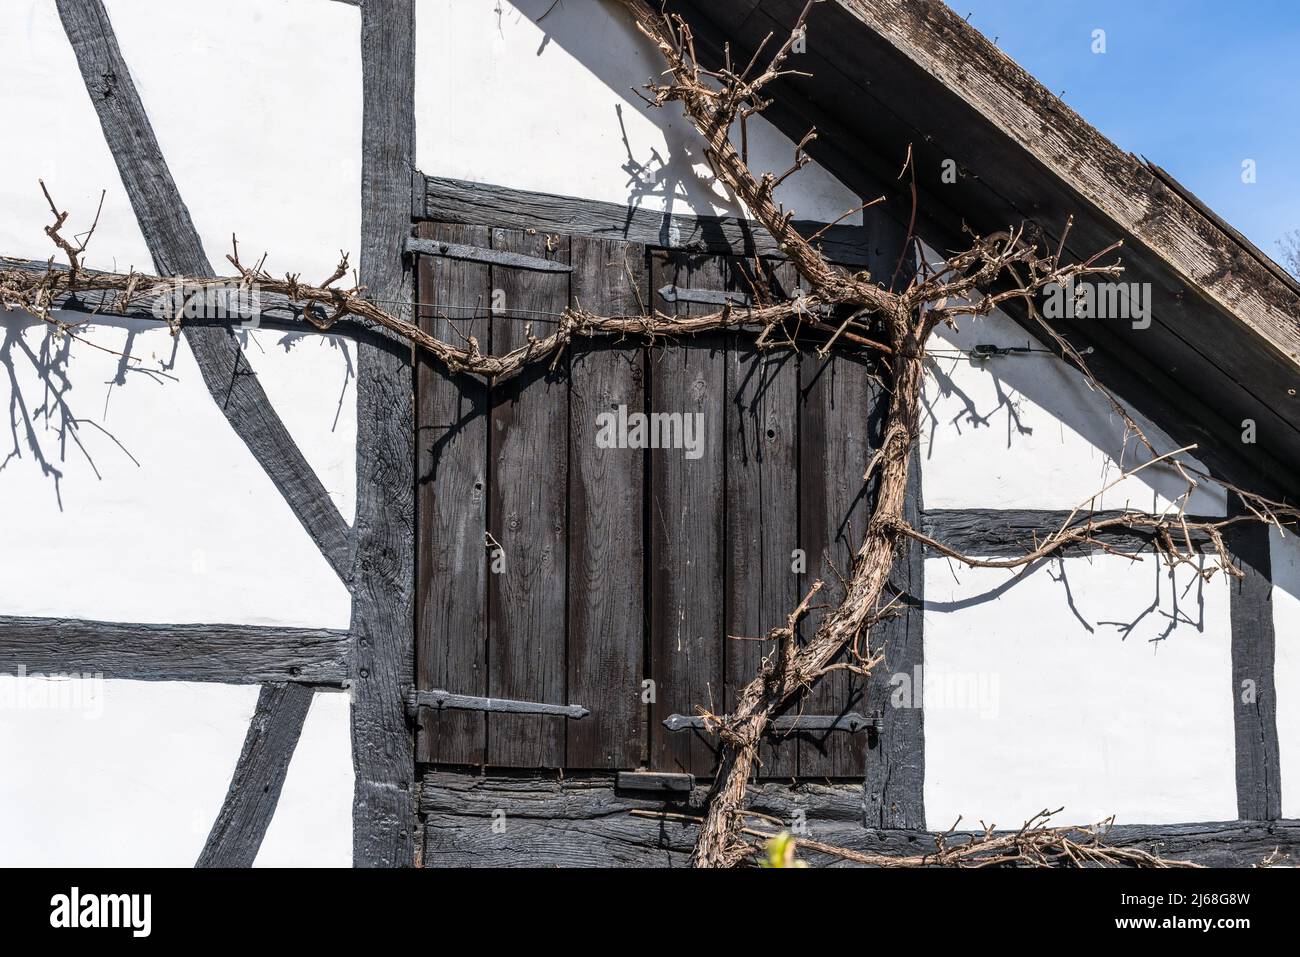 Alemania, típica fachada tradicional de una antigua casa de entramado de madera en el campo decorada con uvas. Sol primaveral. La ventana está cubierta con Foto de stock